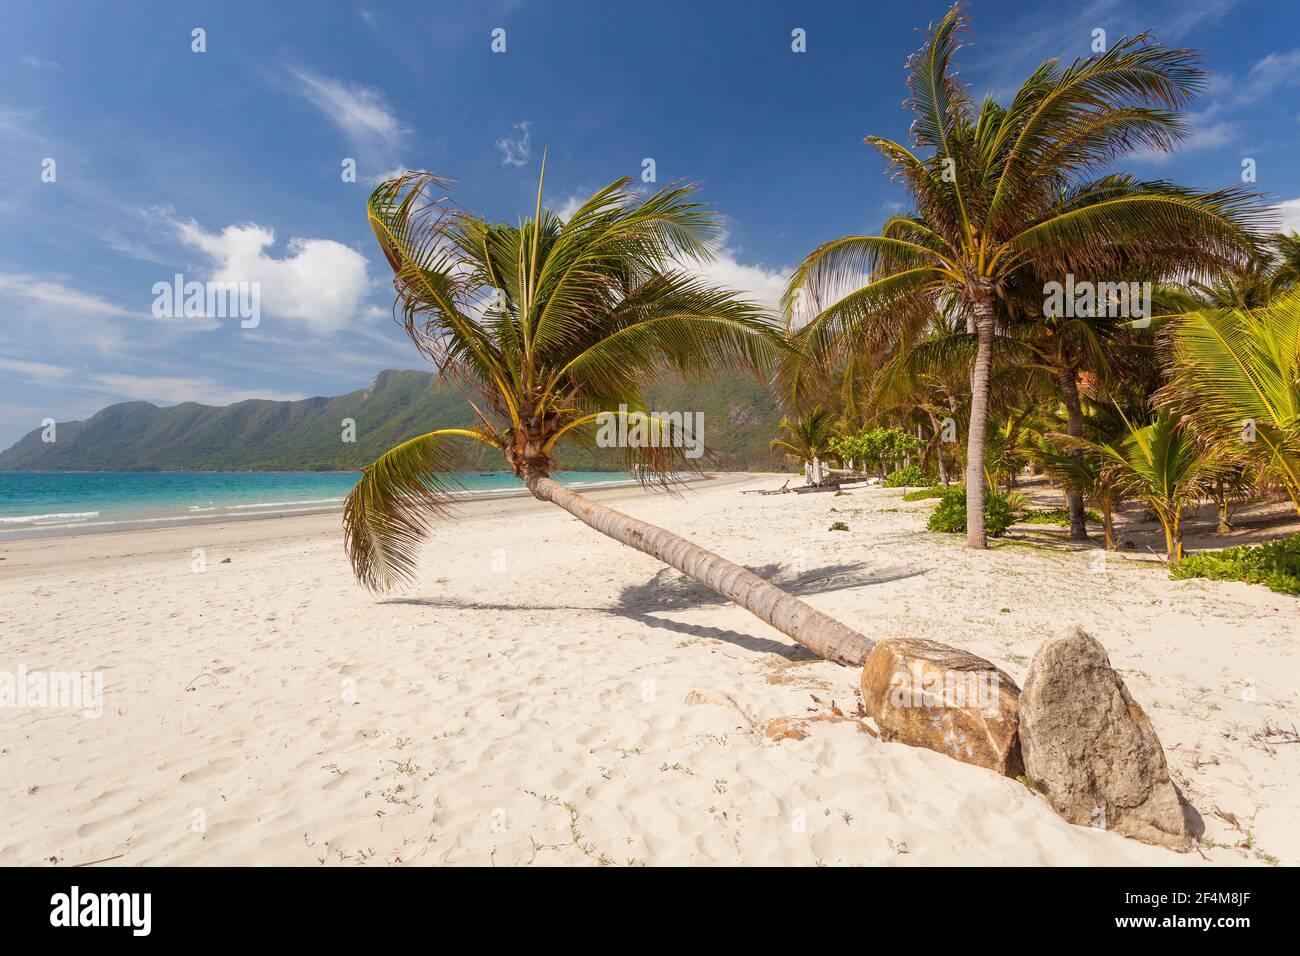 Ruhiger tropischer Strand mit einer gebogenen Kokospalme auf einer Con Dao Insel in Vietnam. Stockfoto